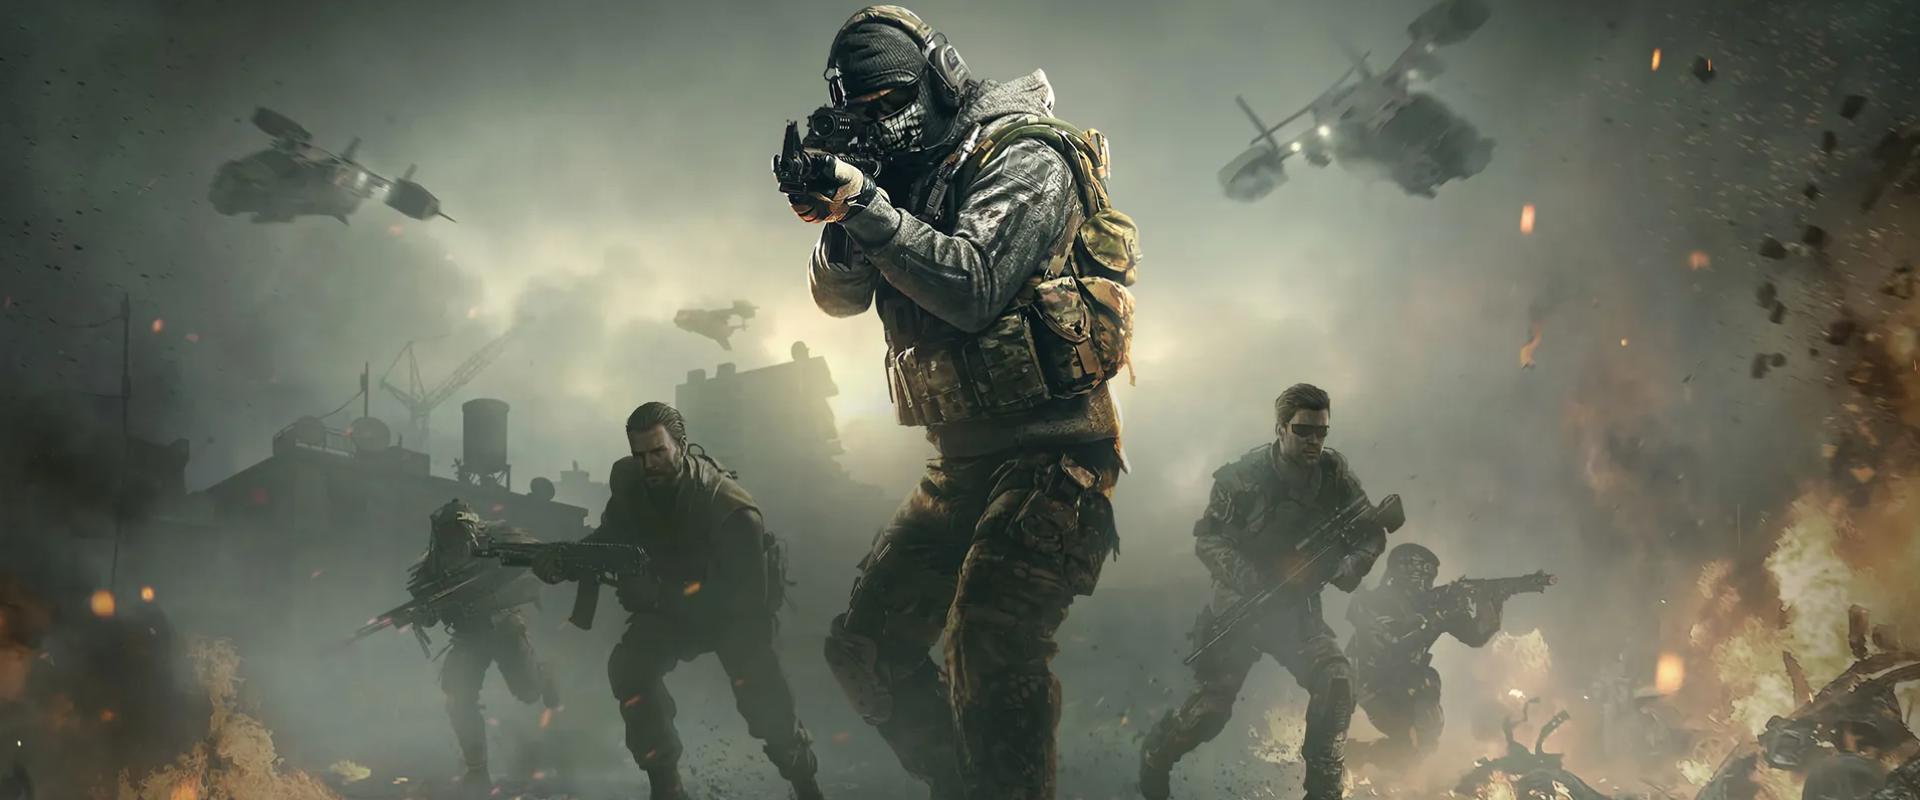 Nyílt világú kampánnyal érkezik az idei Call of Duty, mutatjuk mire számíthatunk